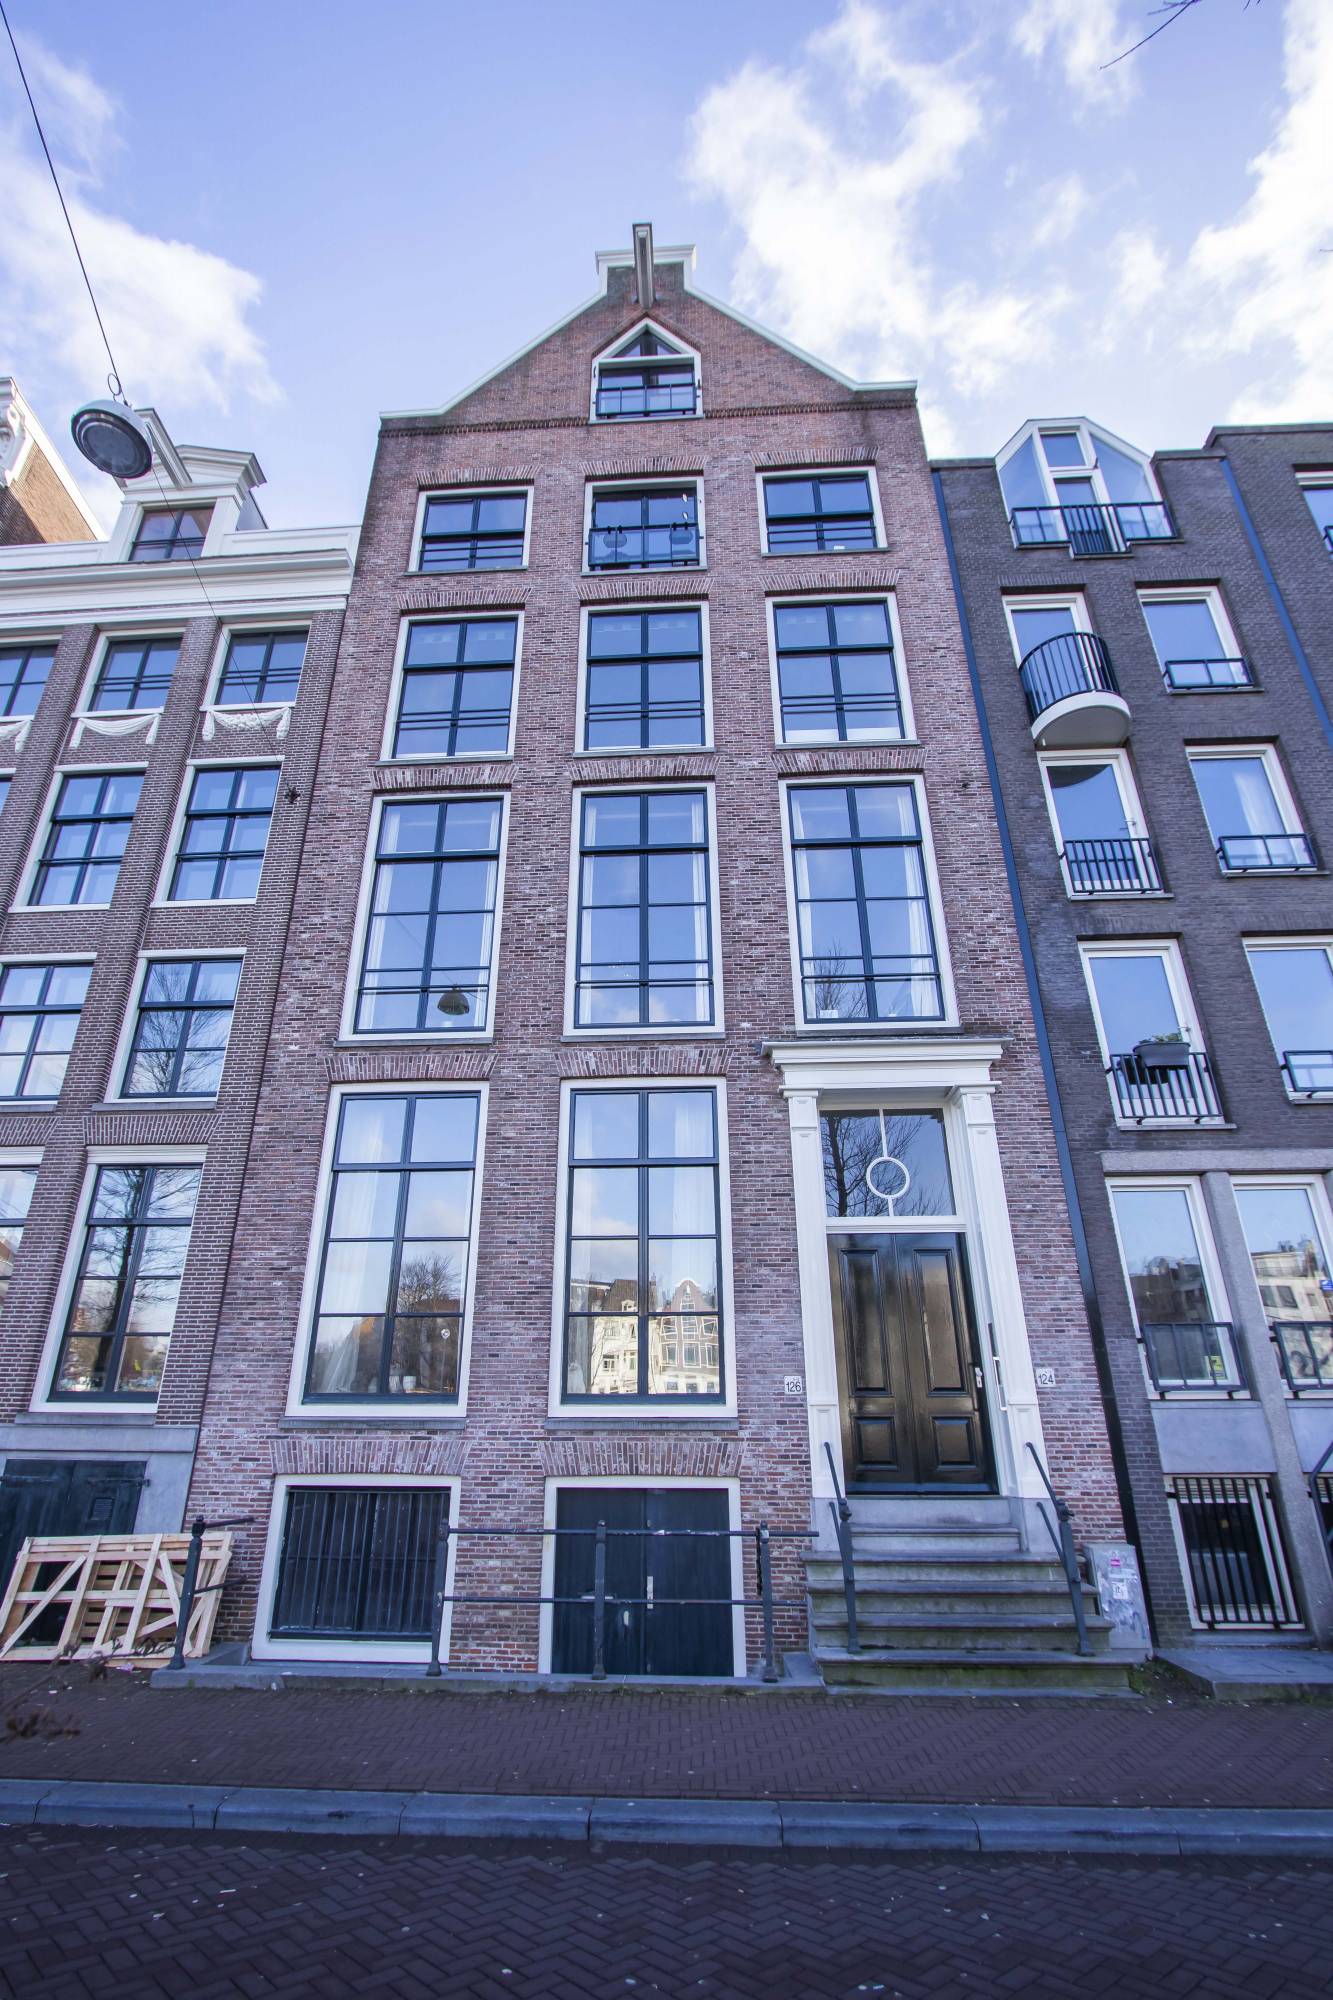 Bekijk foto 1/25 van house in Amsterdam